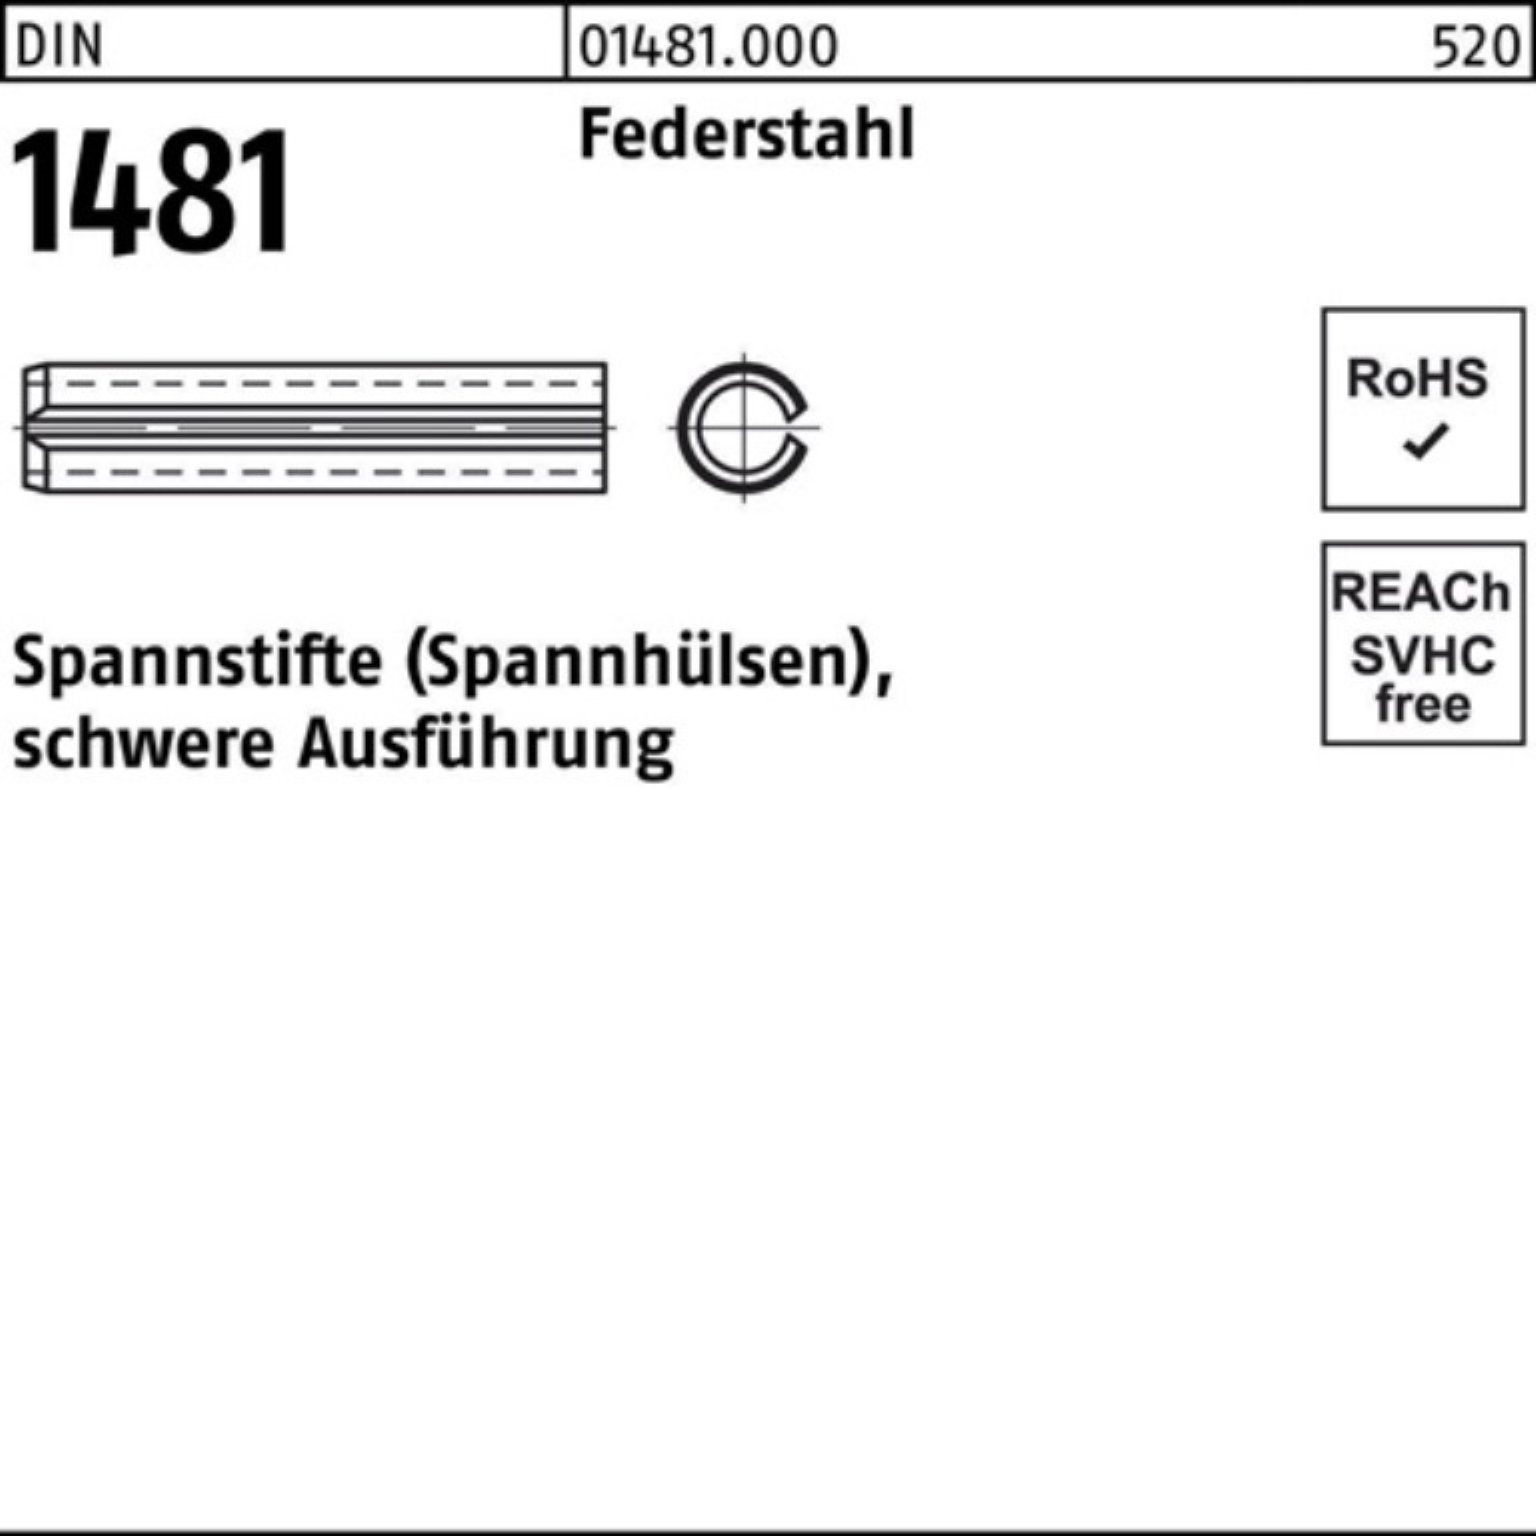 Reyher Spannstift 200er Pack Federstahl 1481 2x 200 Ausführung DIN 6 schwere Spannstift